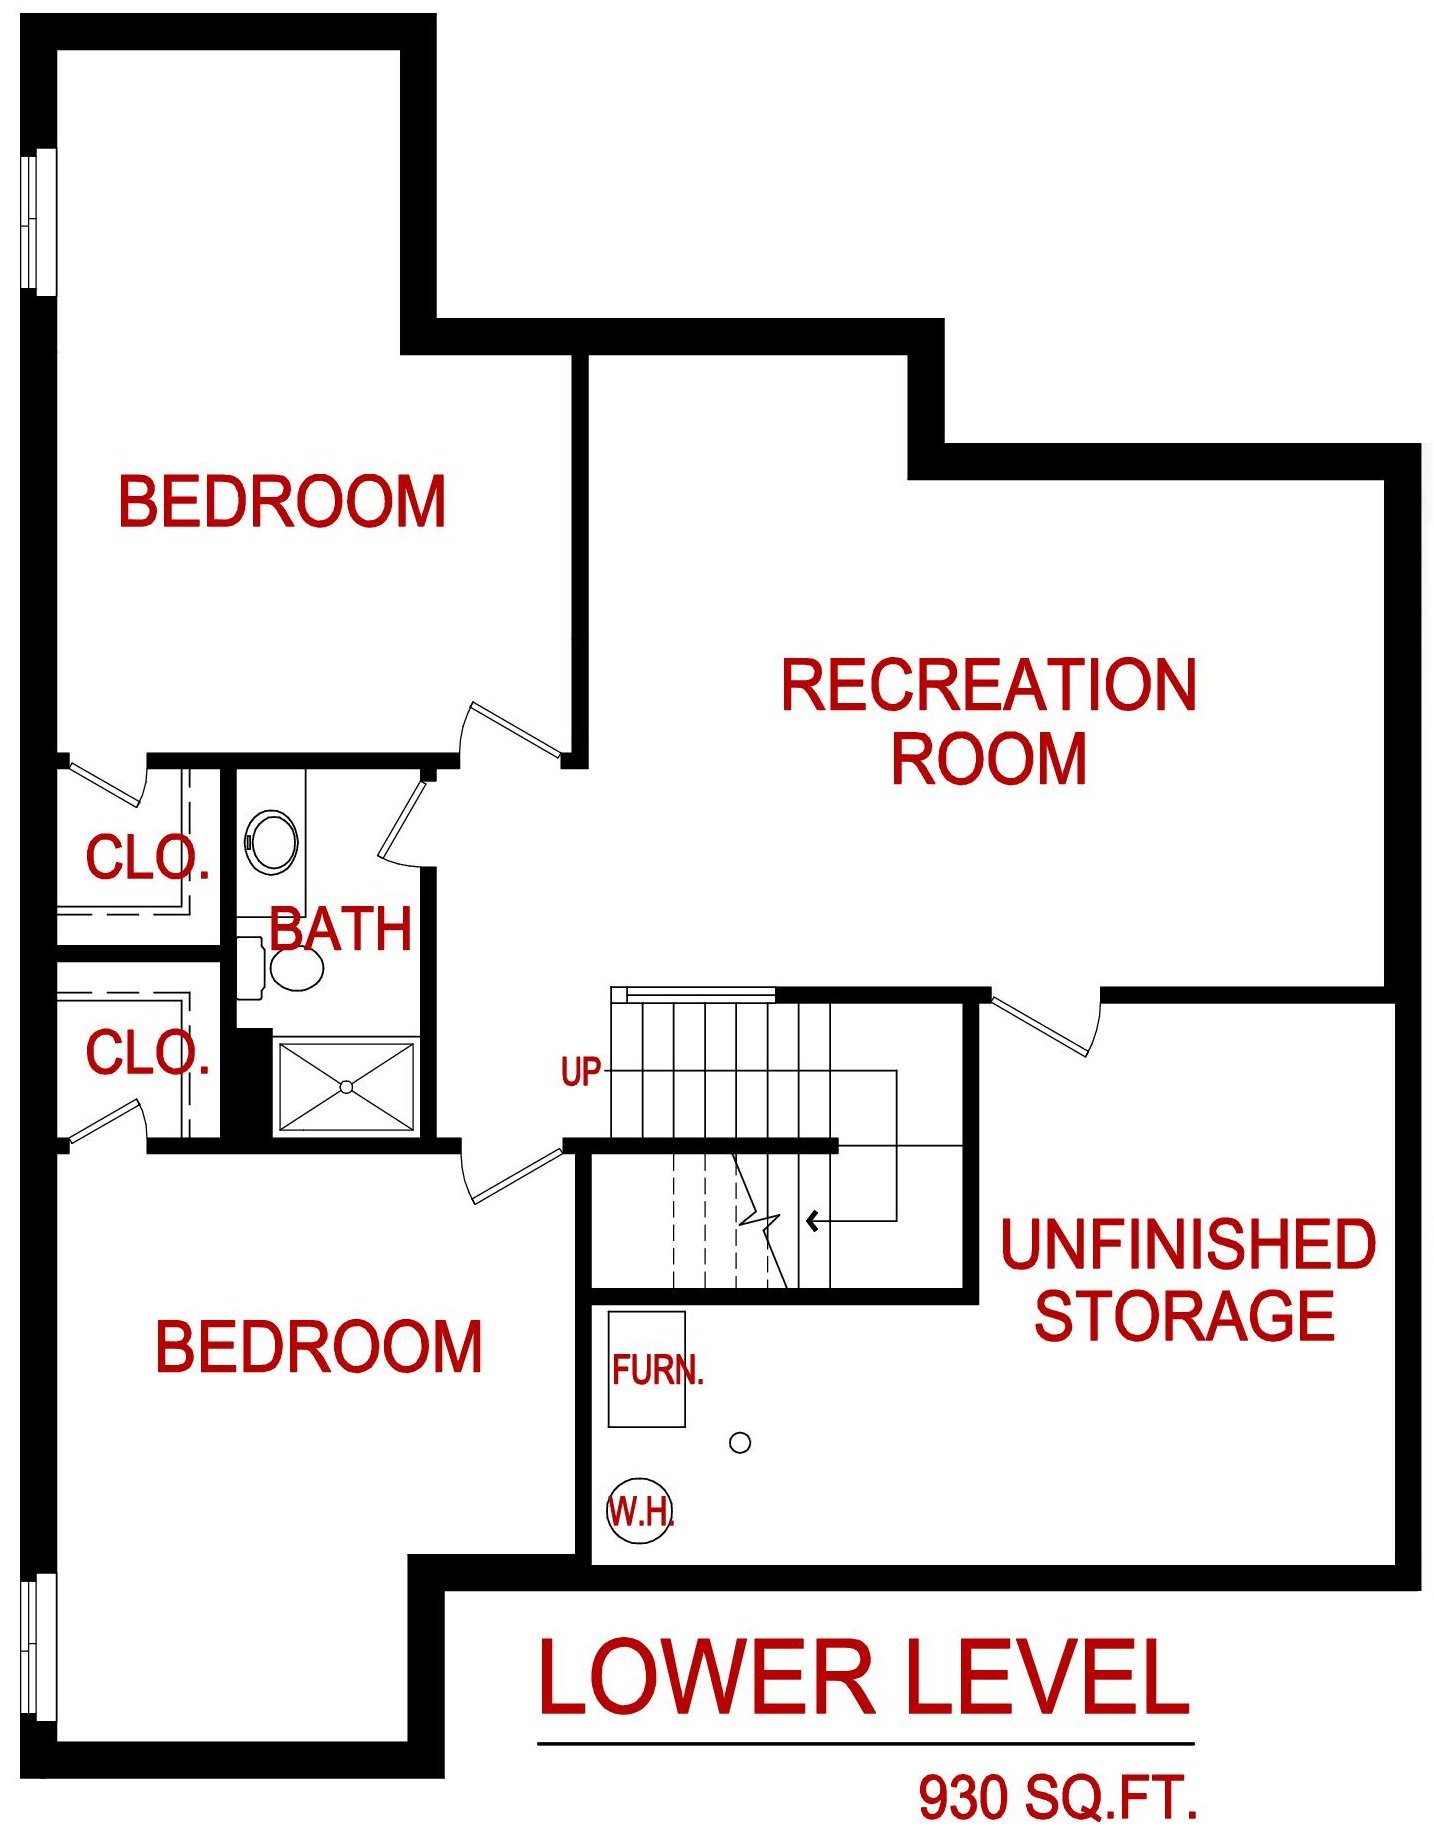 Lower level floor plan for 9540 Shady Bend Rd., Lenexa, KS from lambie homes